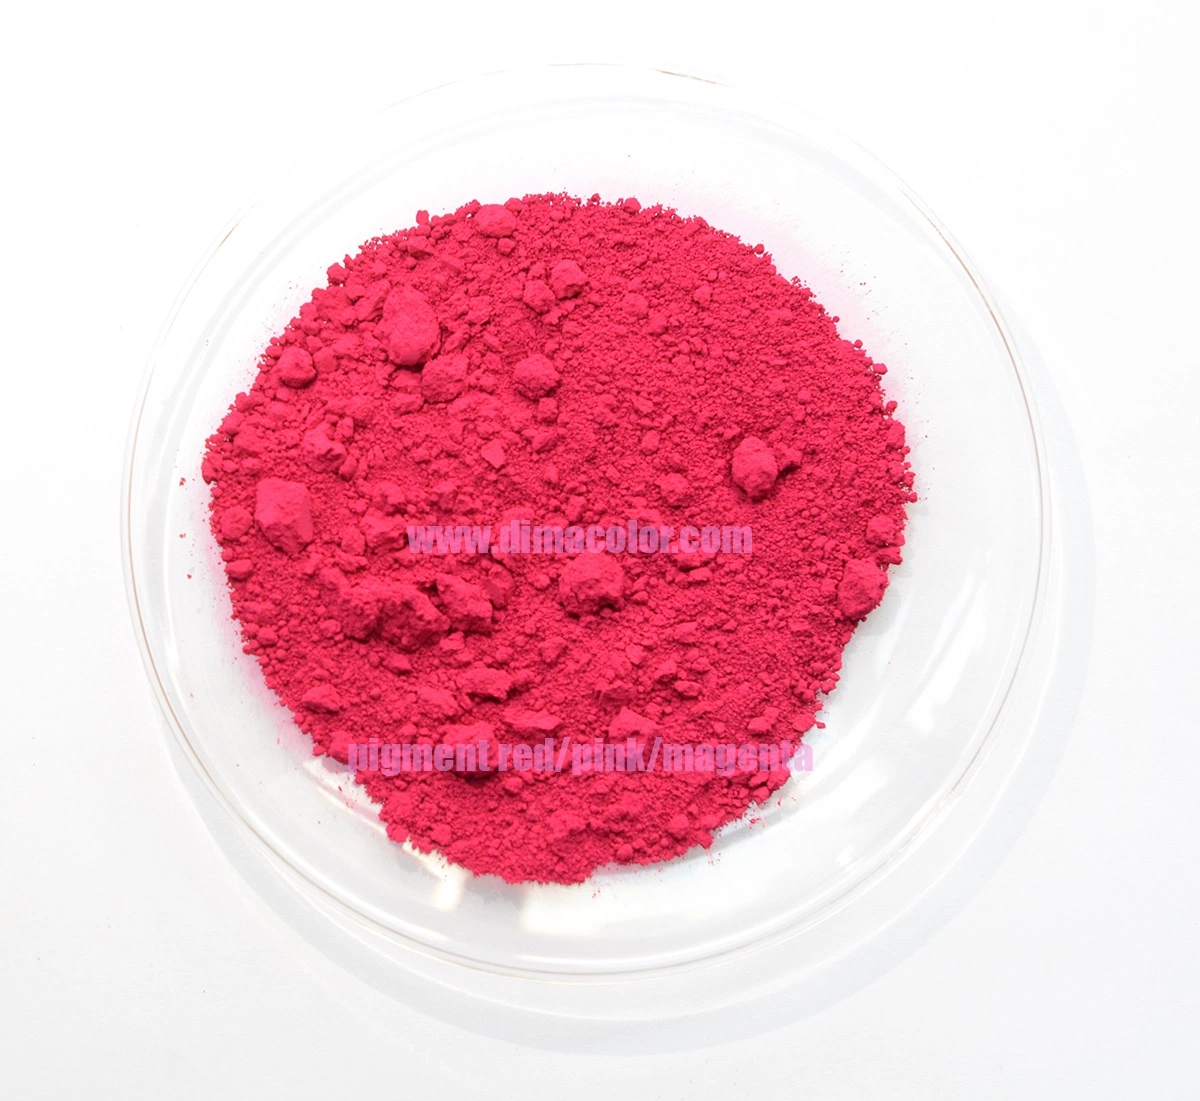 Poudre Organic le Pigment Red 122 (E) Quinacridone rose